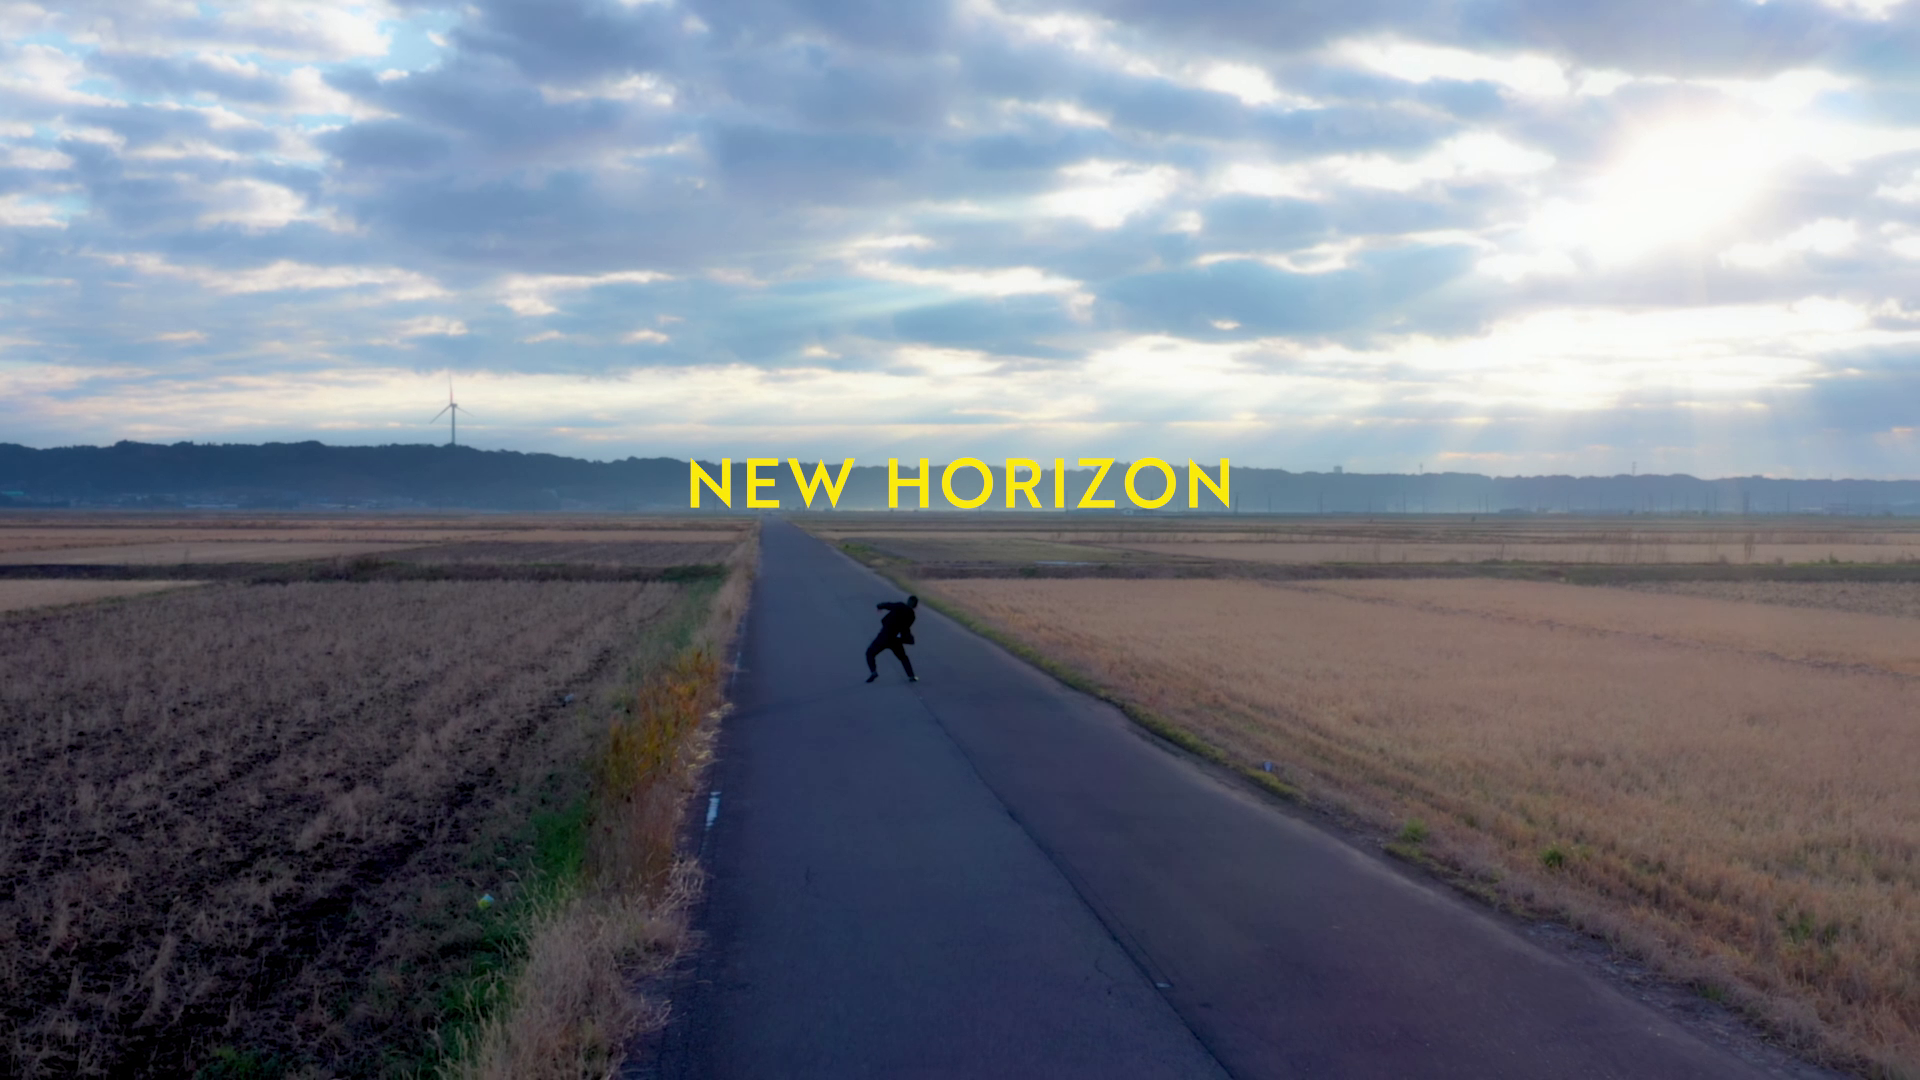 赤松隆一郎「NEW HORIZON」MV